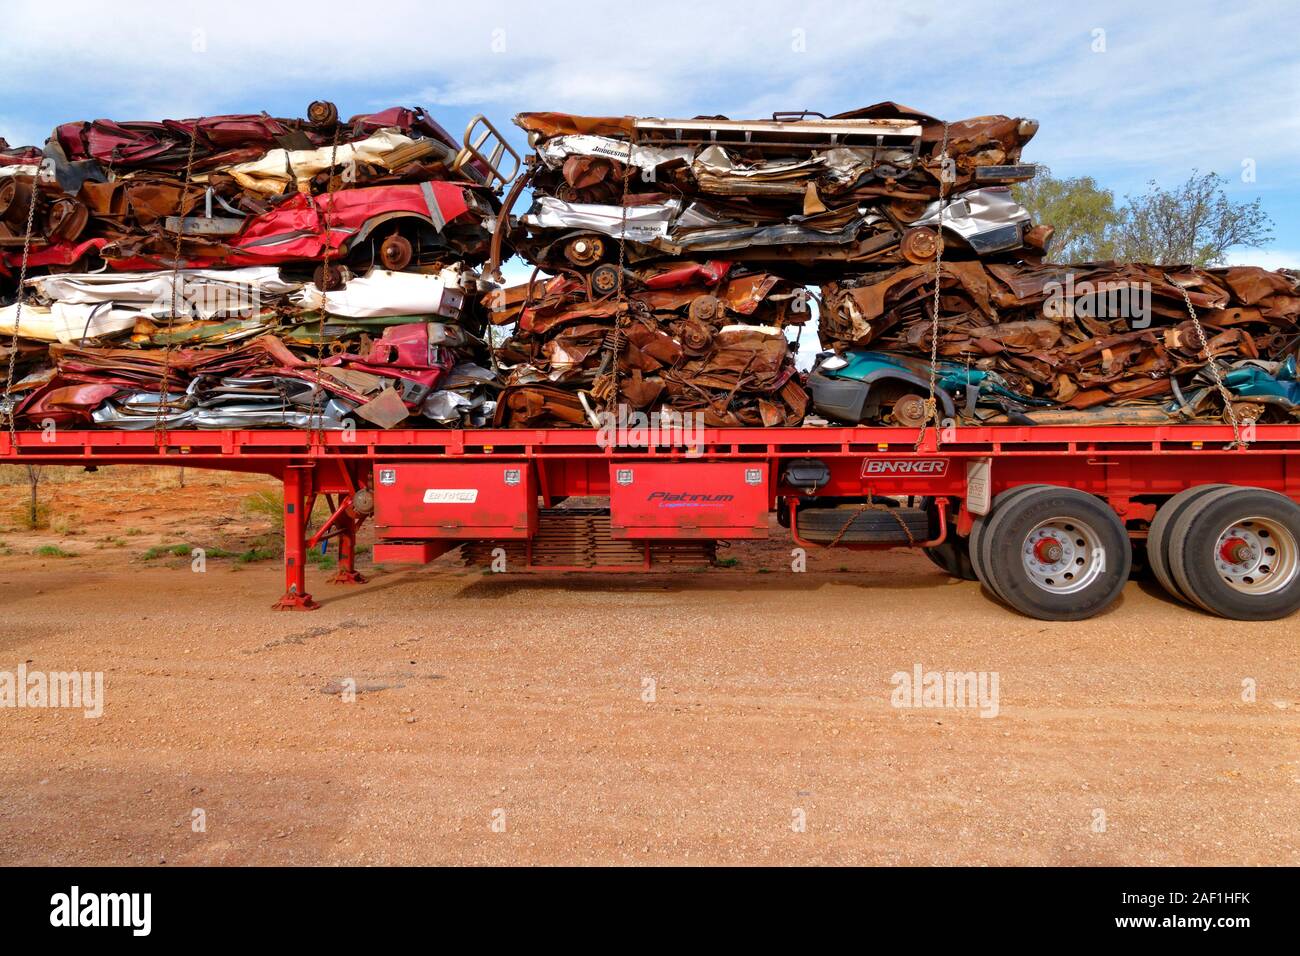 Schiacciate i veicoli a motore su camion rimorchio , West Kimberley, Australia occidentale Foto Stock